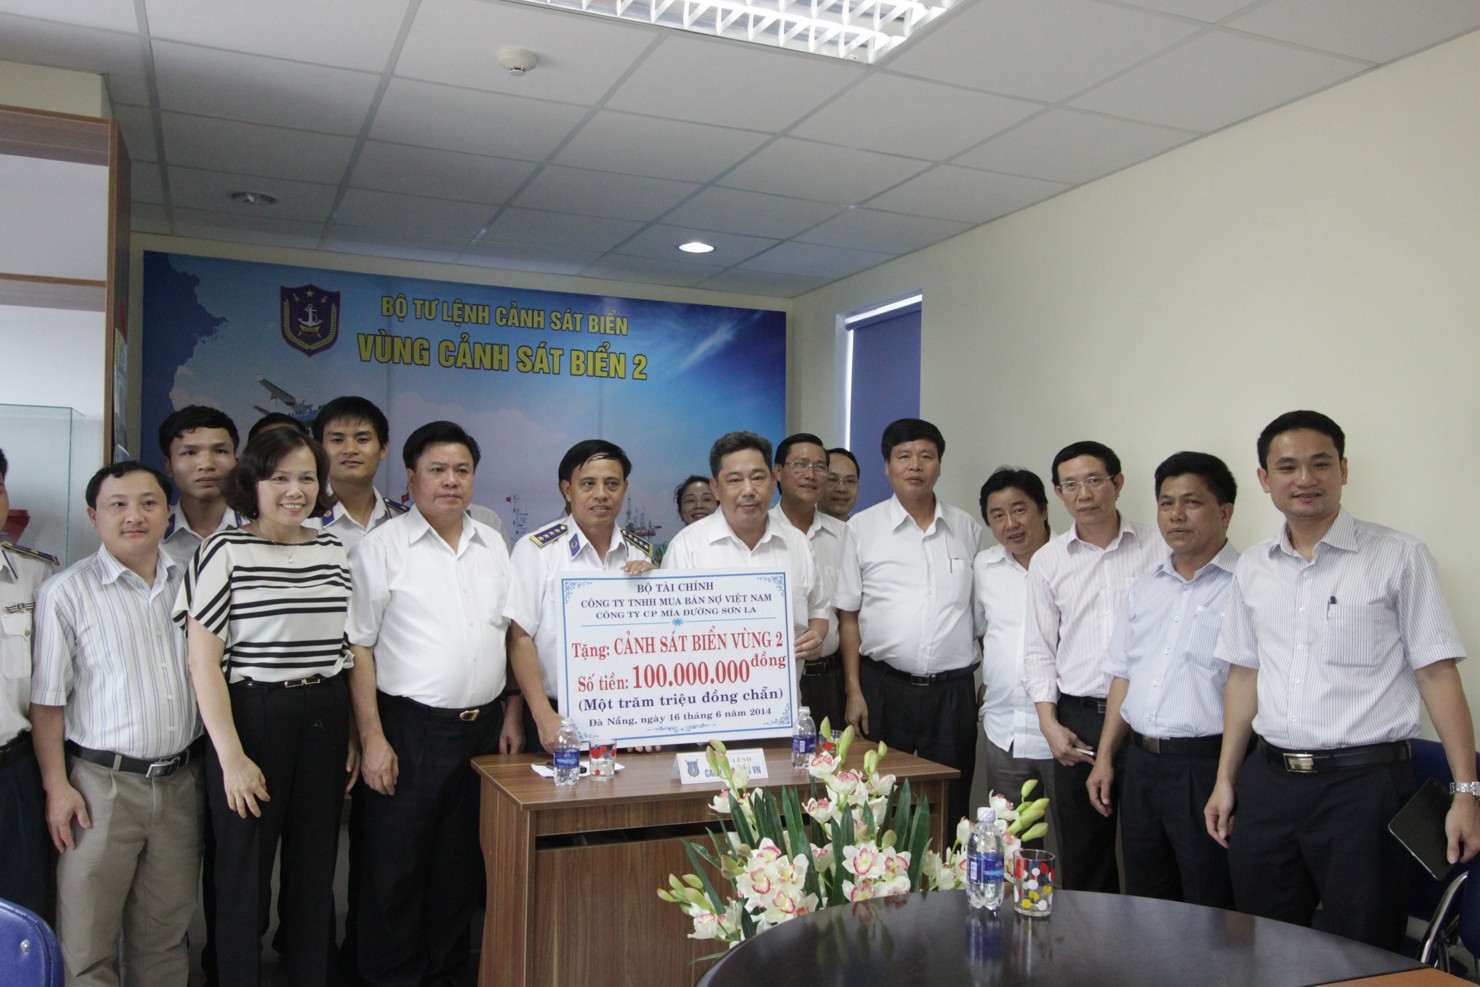 Đoàn công tác của DATC trao quà tặng cho Vùng cảnh sát biển 2